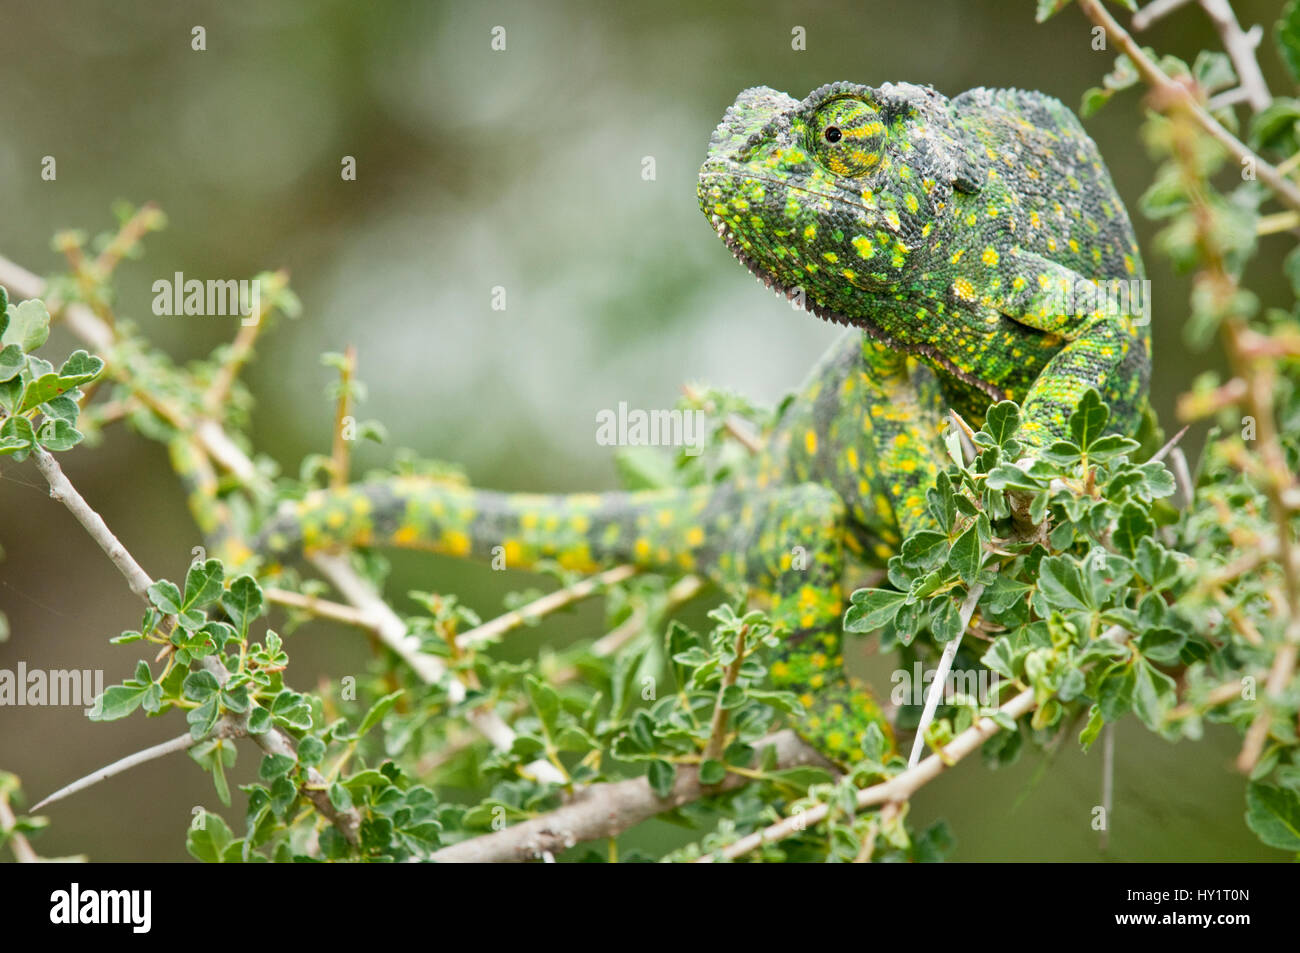 Adult Flap-necked Chameleon (Chamaeleo dilepis). Ndutu Safari Lodge, Ngorongoro Conservation Area, Tanzania. February. Stock Photo